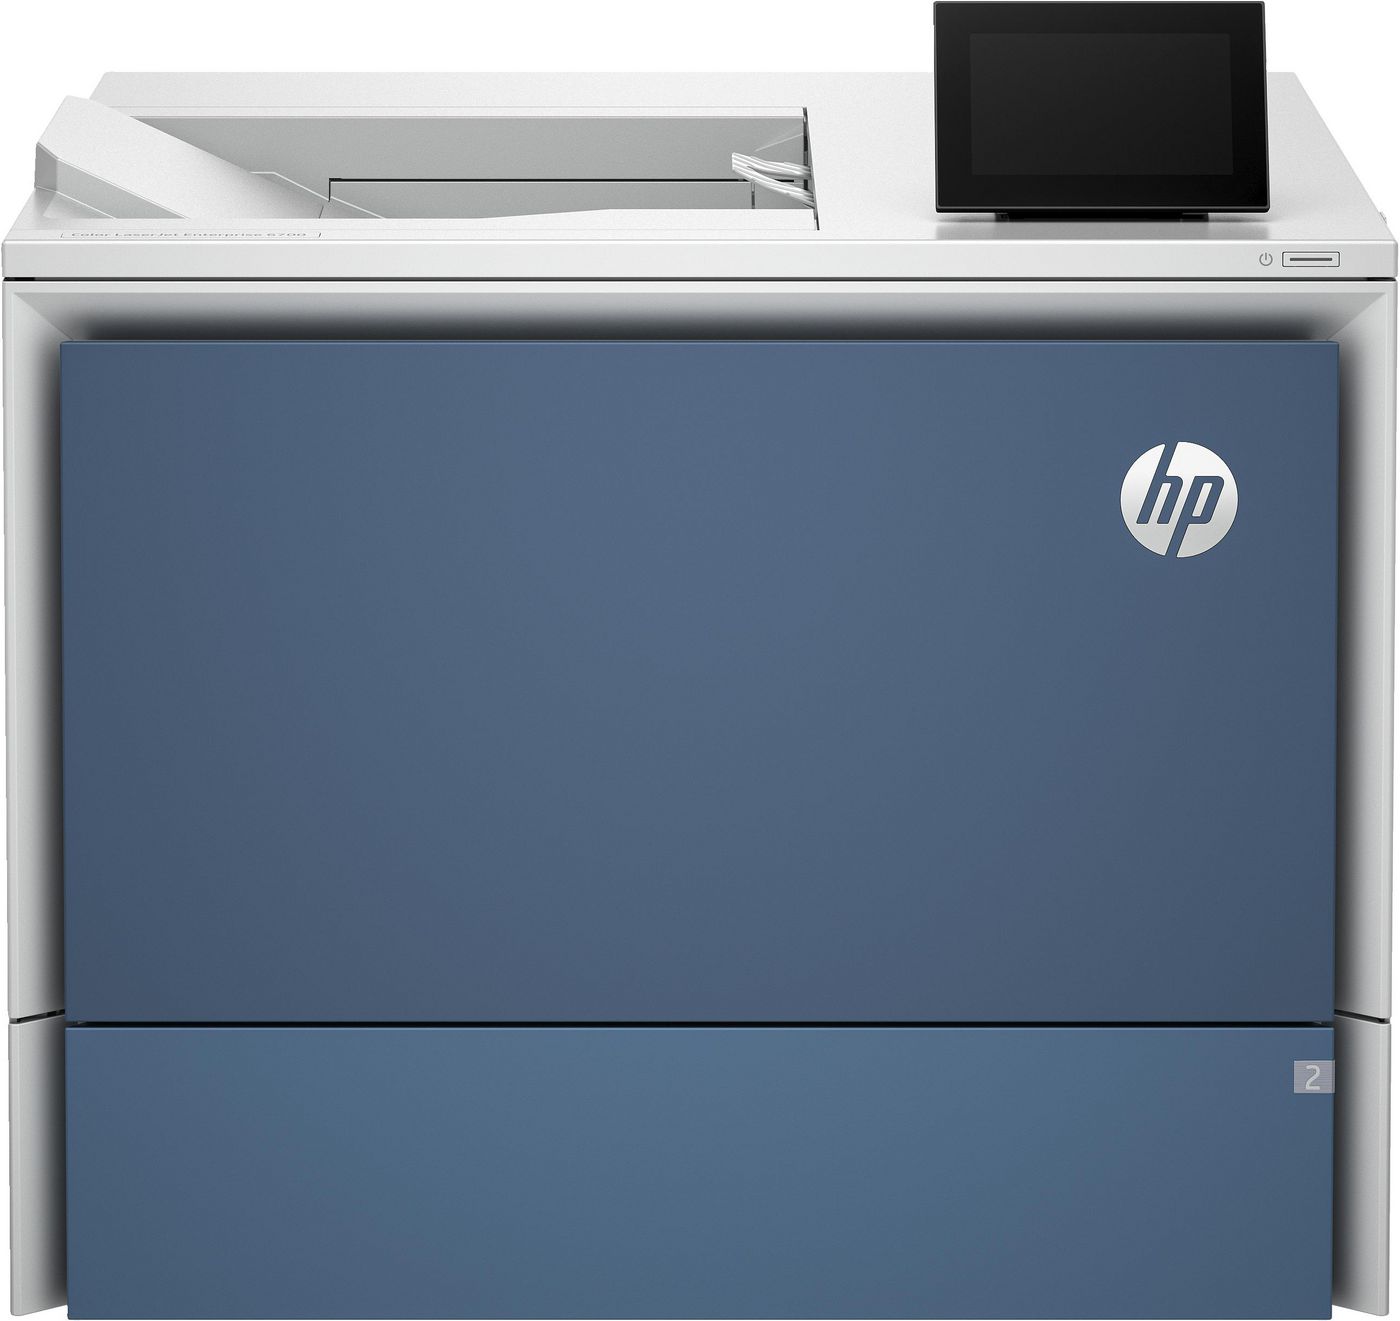 HP 58M42A W128781188 Laserjet Enterprise Color 